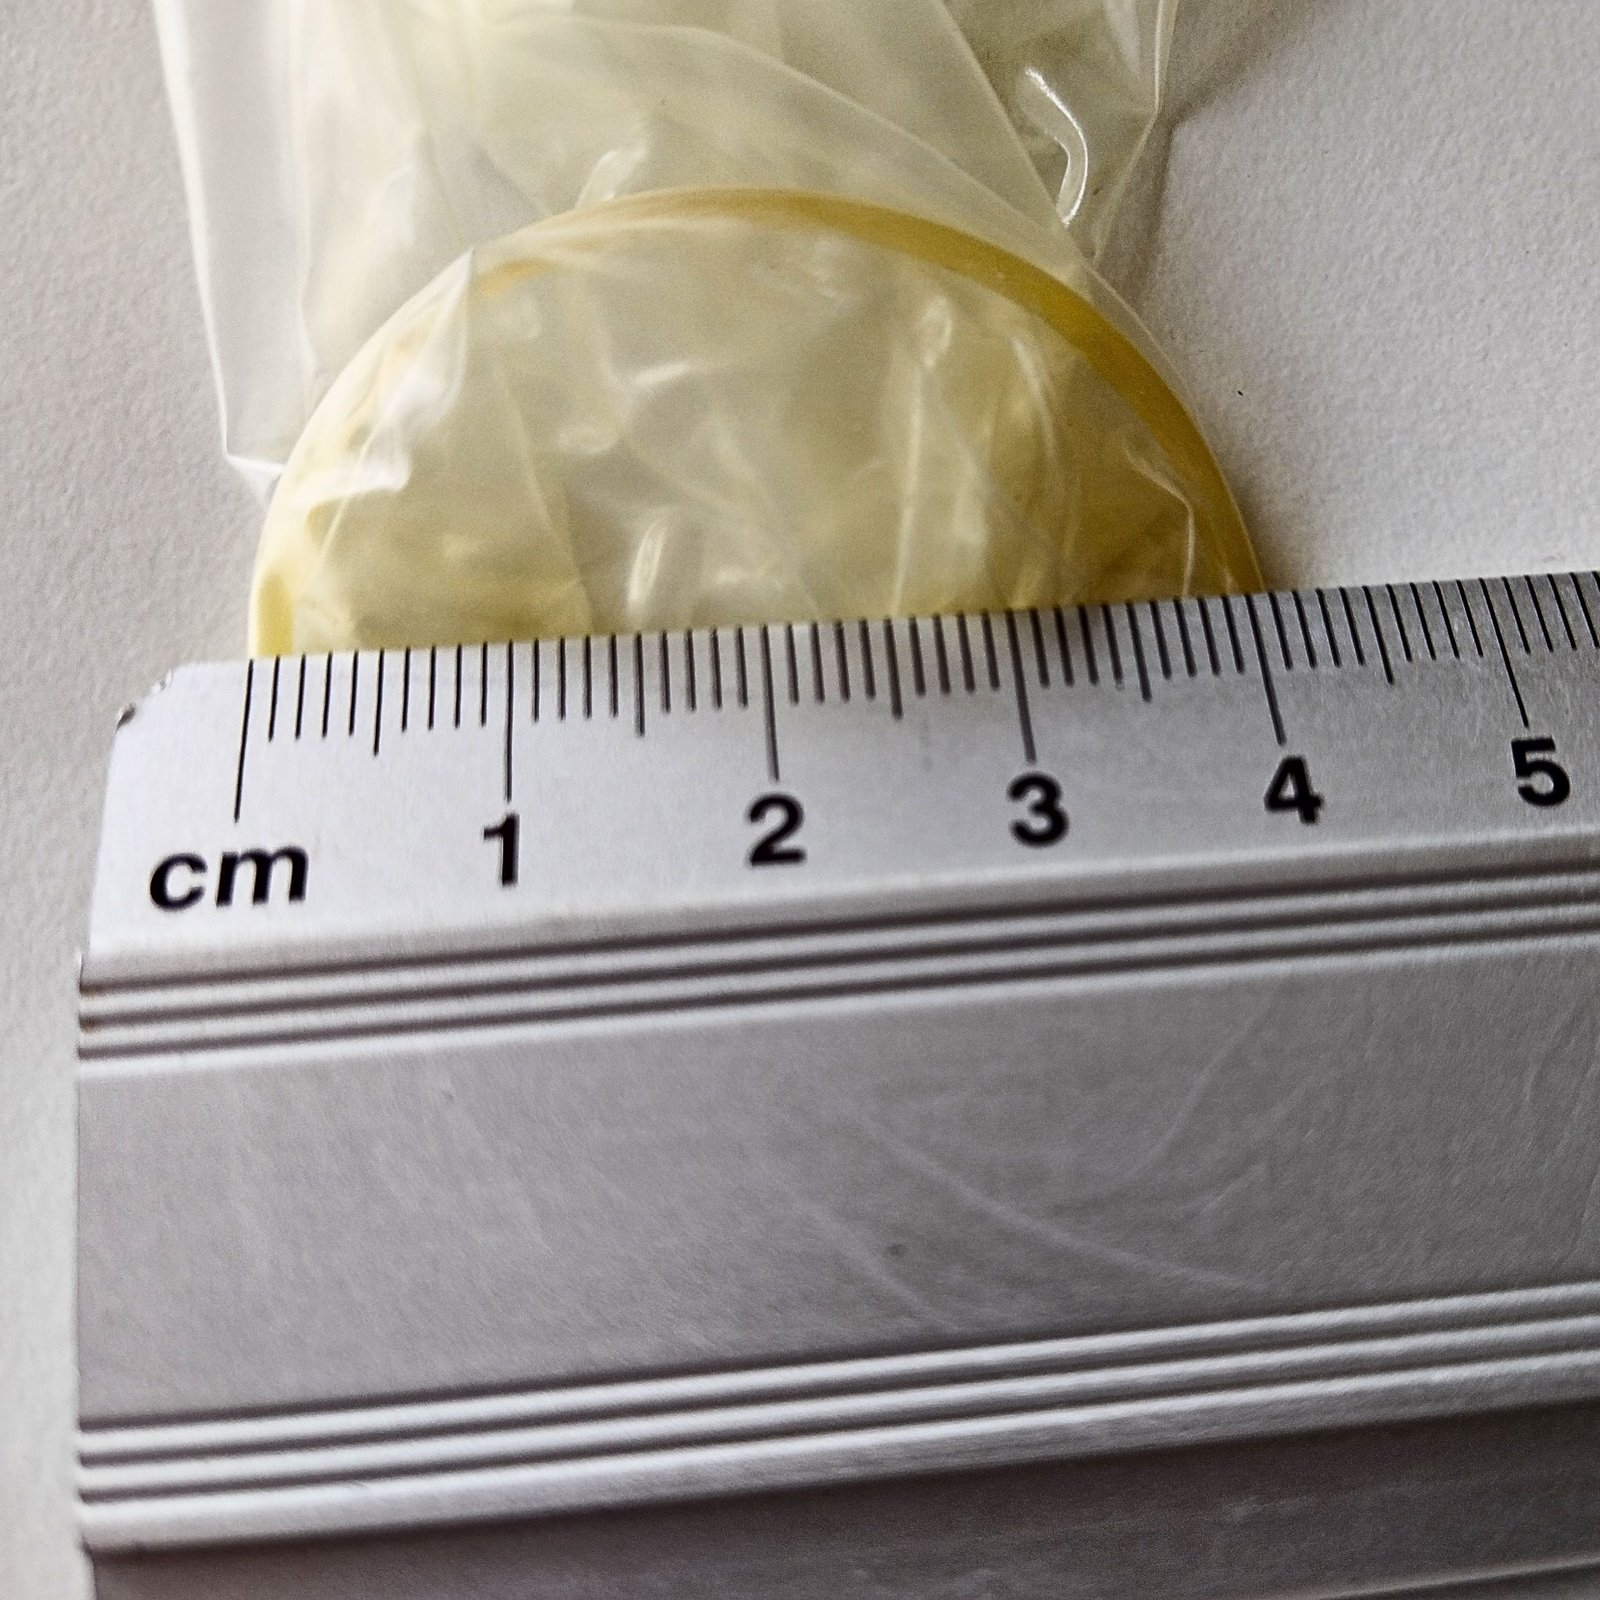 Măsurarea diametrului unui prezervativ